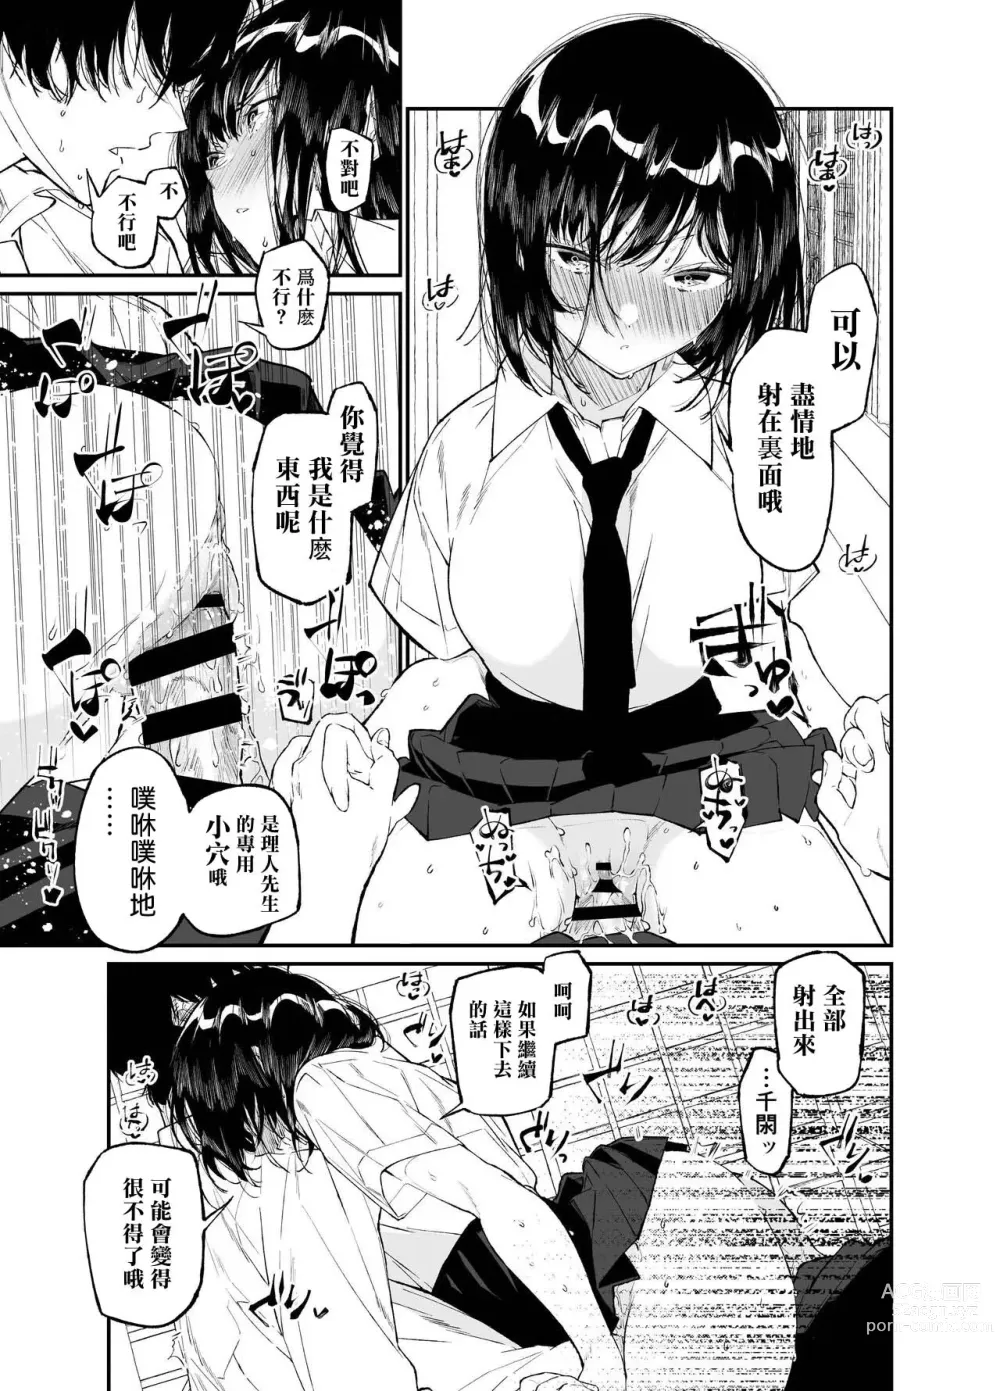 Page 53 of doujinshi Natsu, Shoujo wa Tonde, Hi ni Iru.